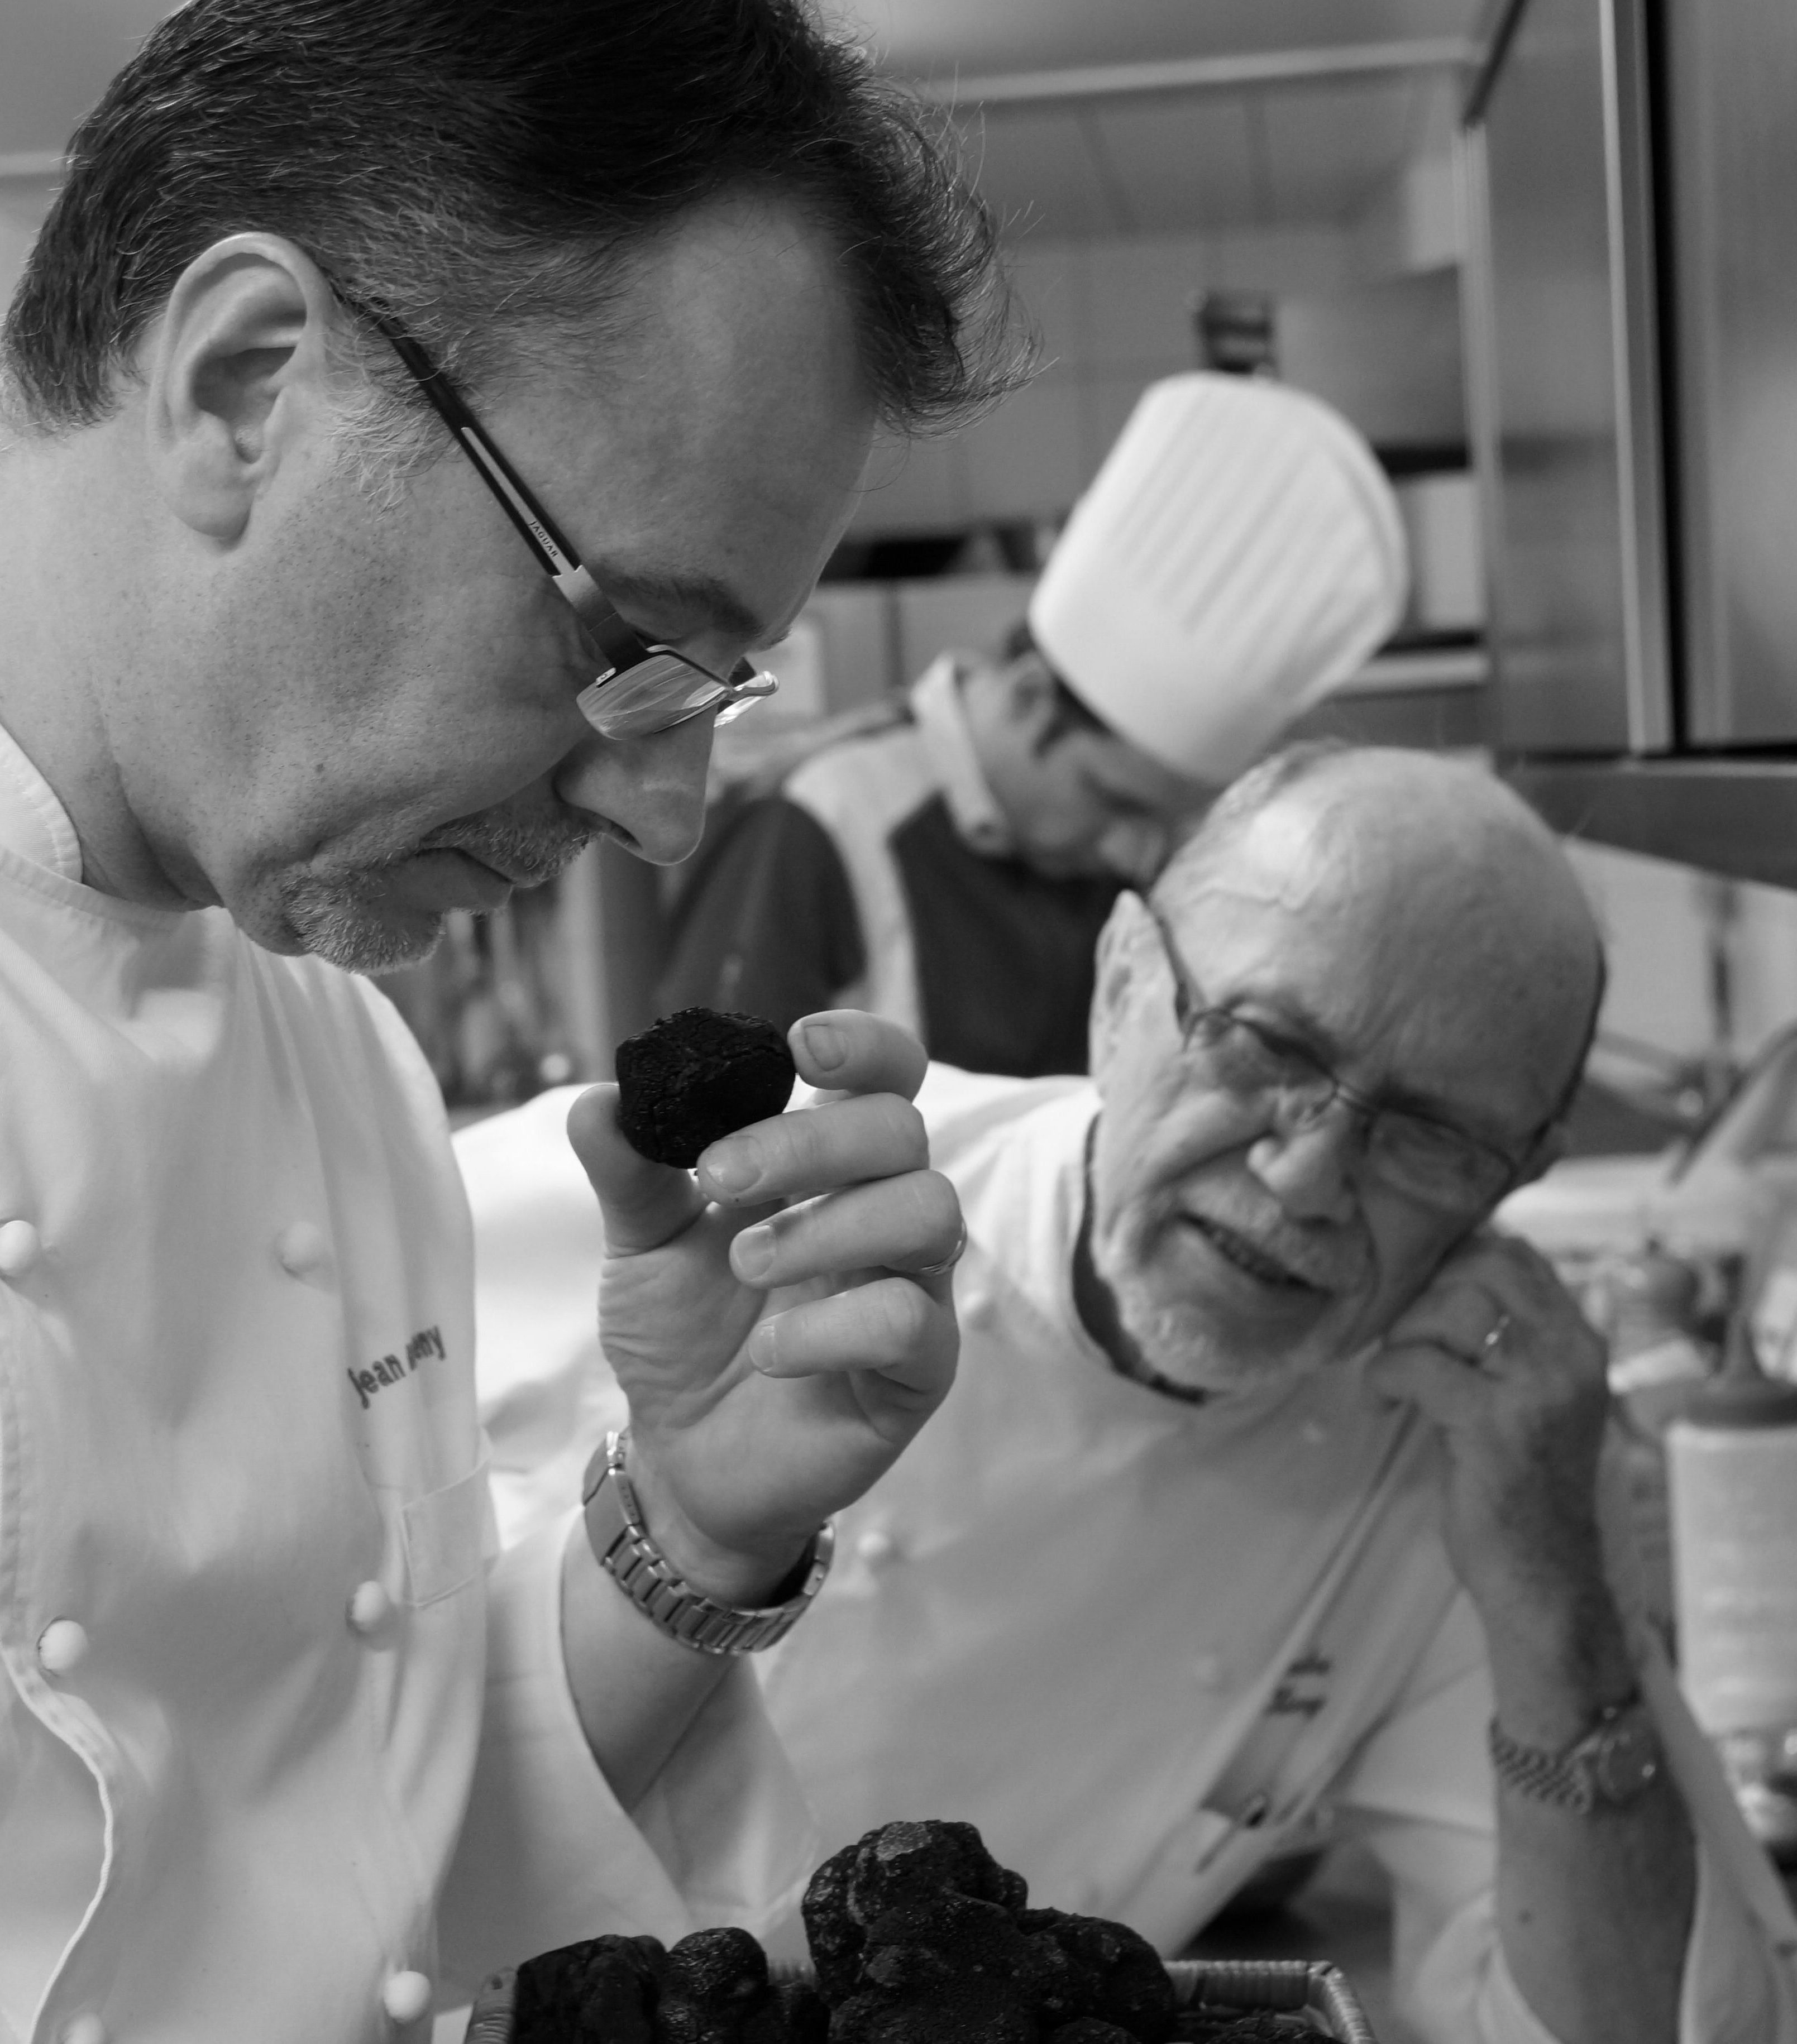 Une image avec nos 3 générations de cuisiniers : André KIENY - Jean-Marc KIENY - Guillaume BRETA le nouveau chef